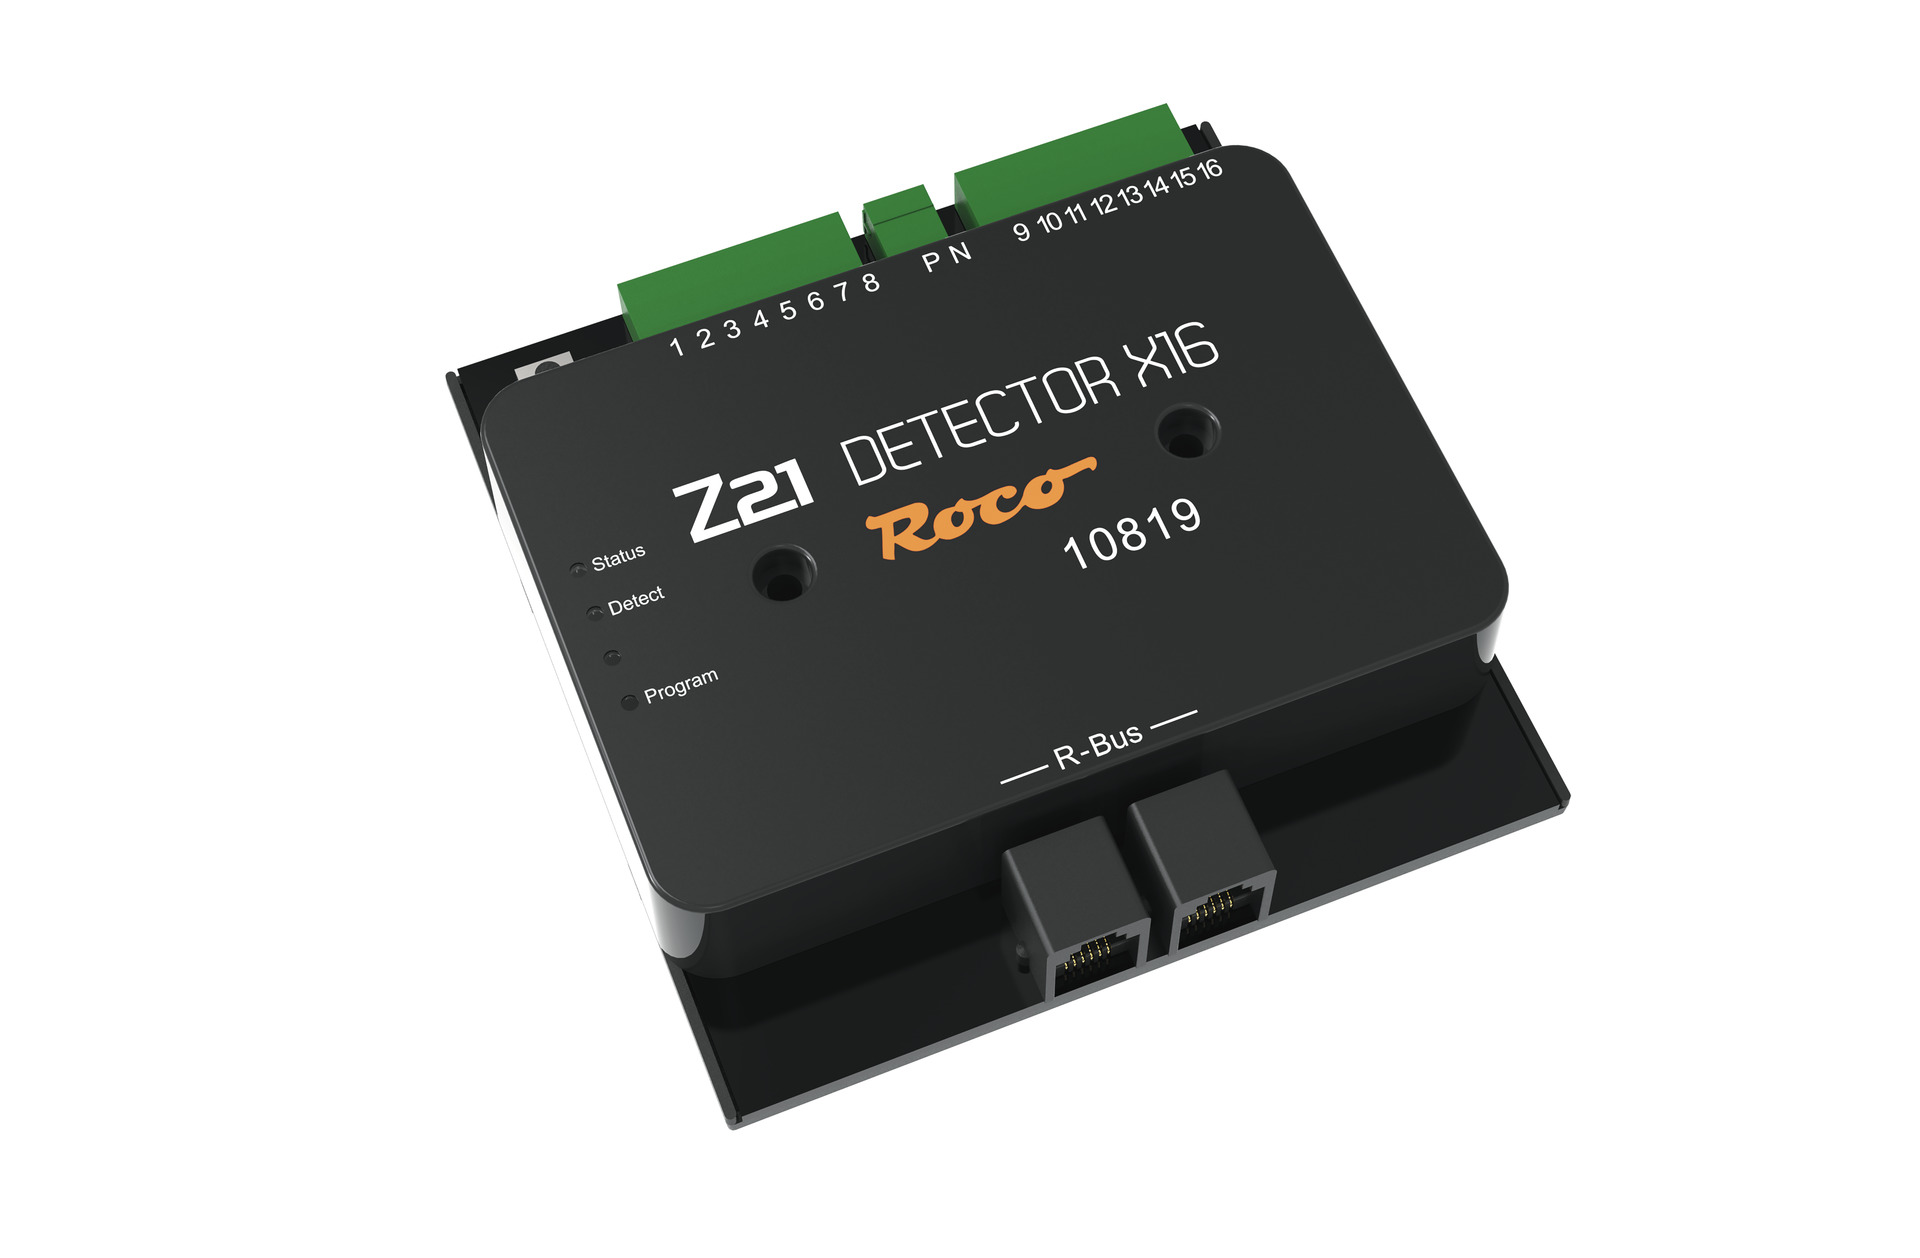 Z21 Detector 16 